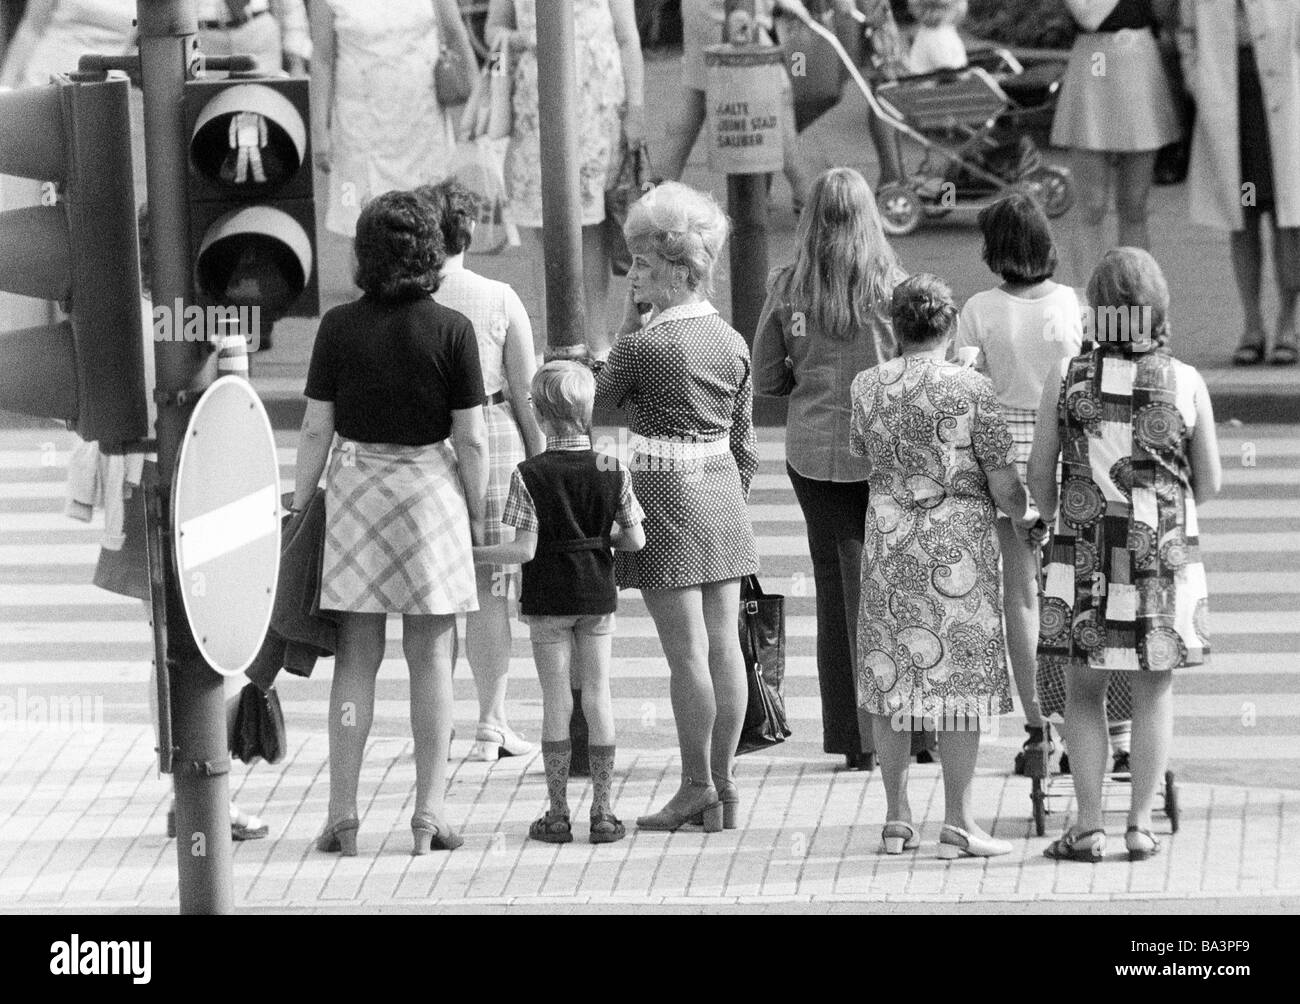 70er Jahre, schwarz / weiß Foto, Menschen auf Einkaufsbummel, mehrere Frauen und einen jungen warten an einer Ampel, Zebrastreifen Stockfoto